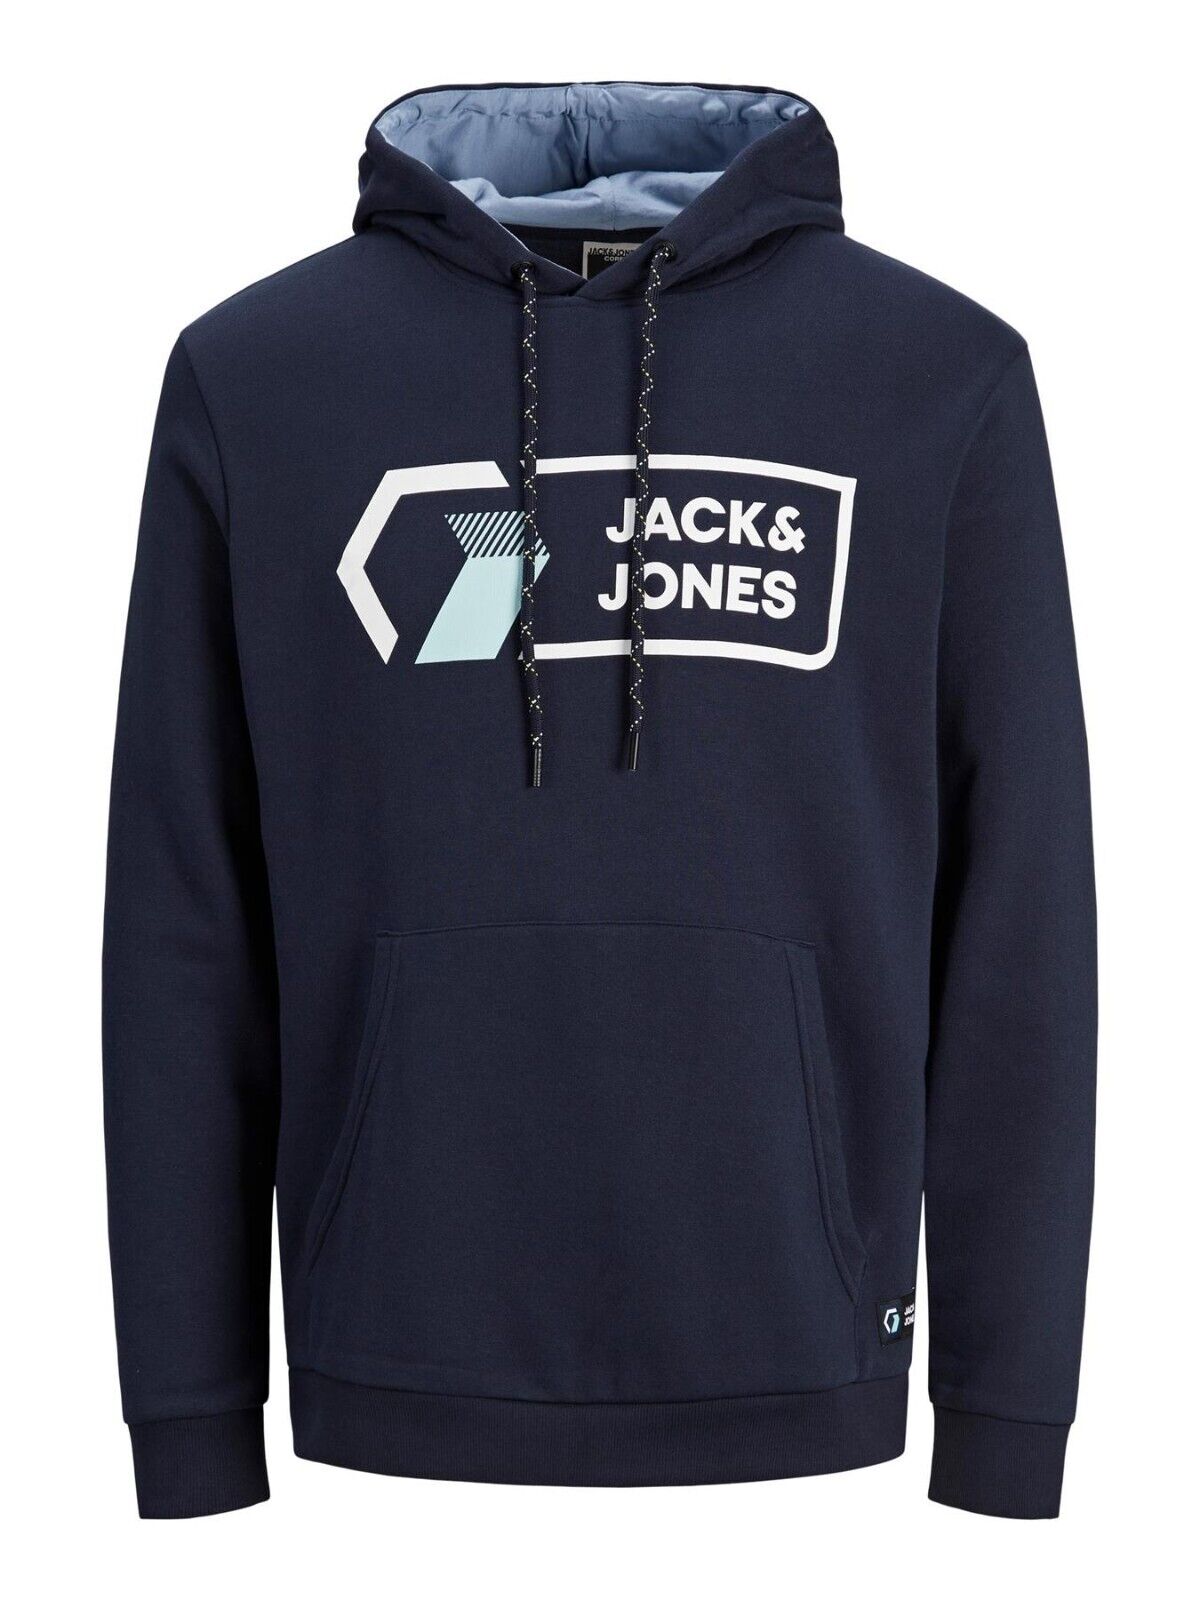 Mens Hoodie Jack & Jones Pullover Logo Design Long Sleeve Hoody Sweatshirt S-2XL